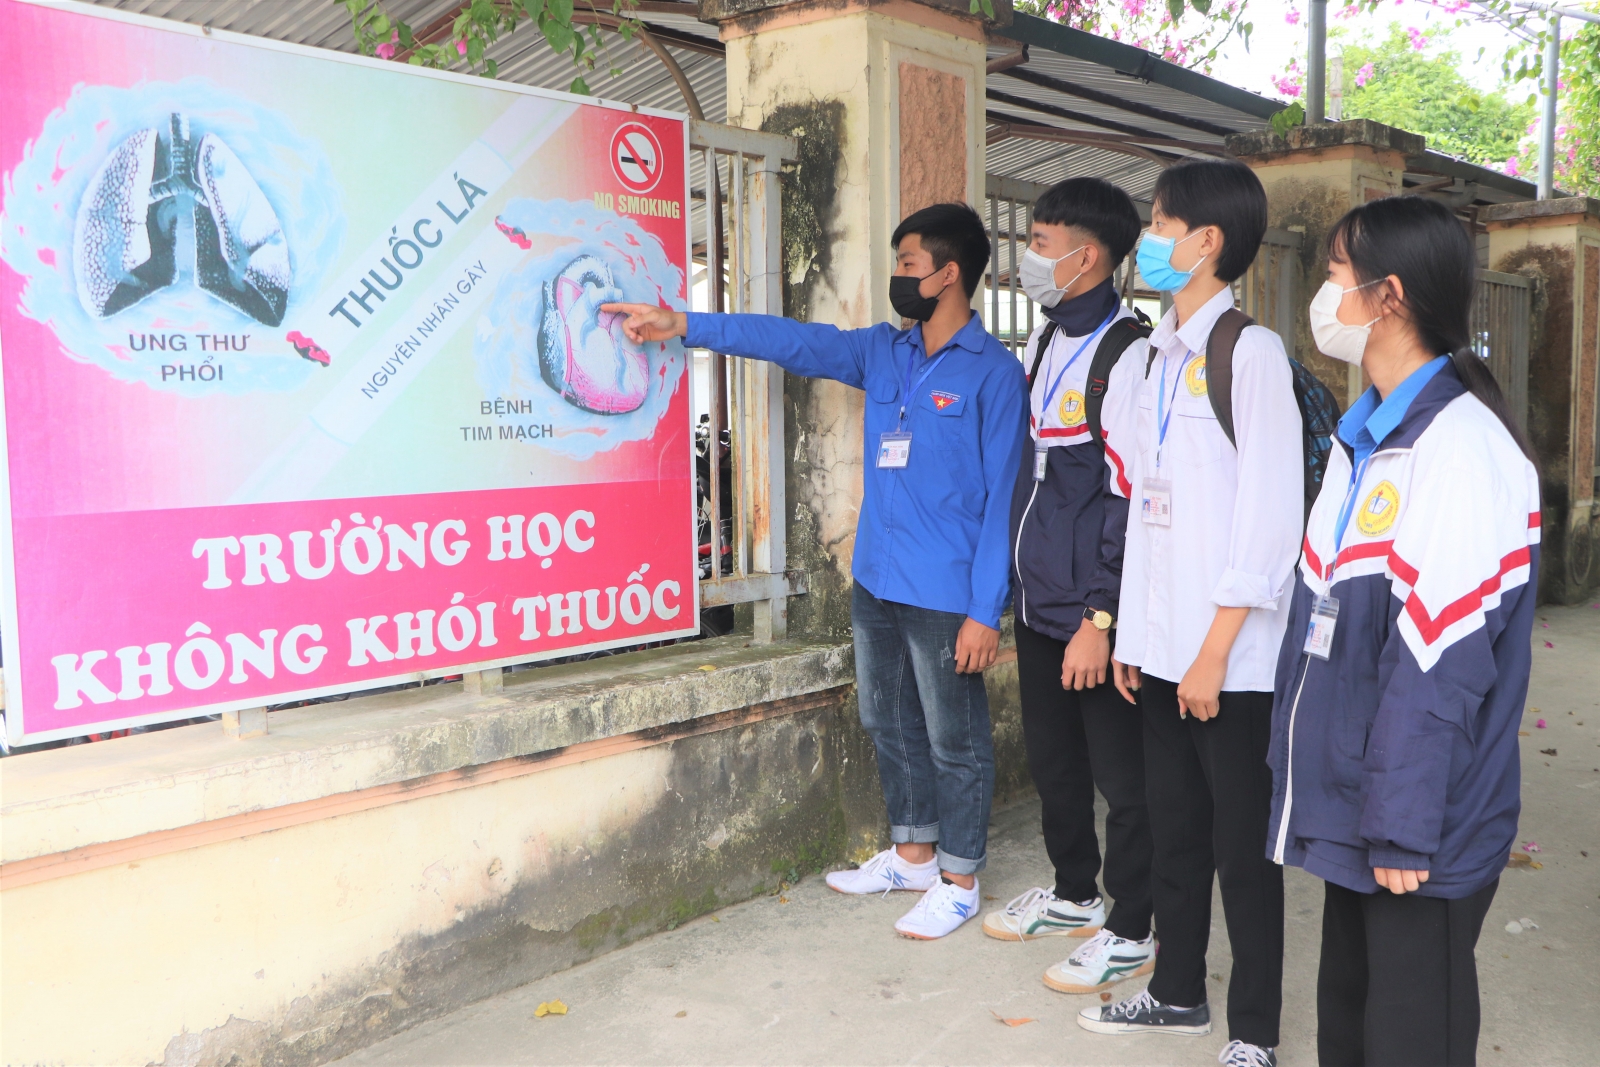 Hình ảnh trực quan giúp trường học Điện Biên nói không với khói thuốc